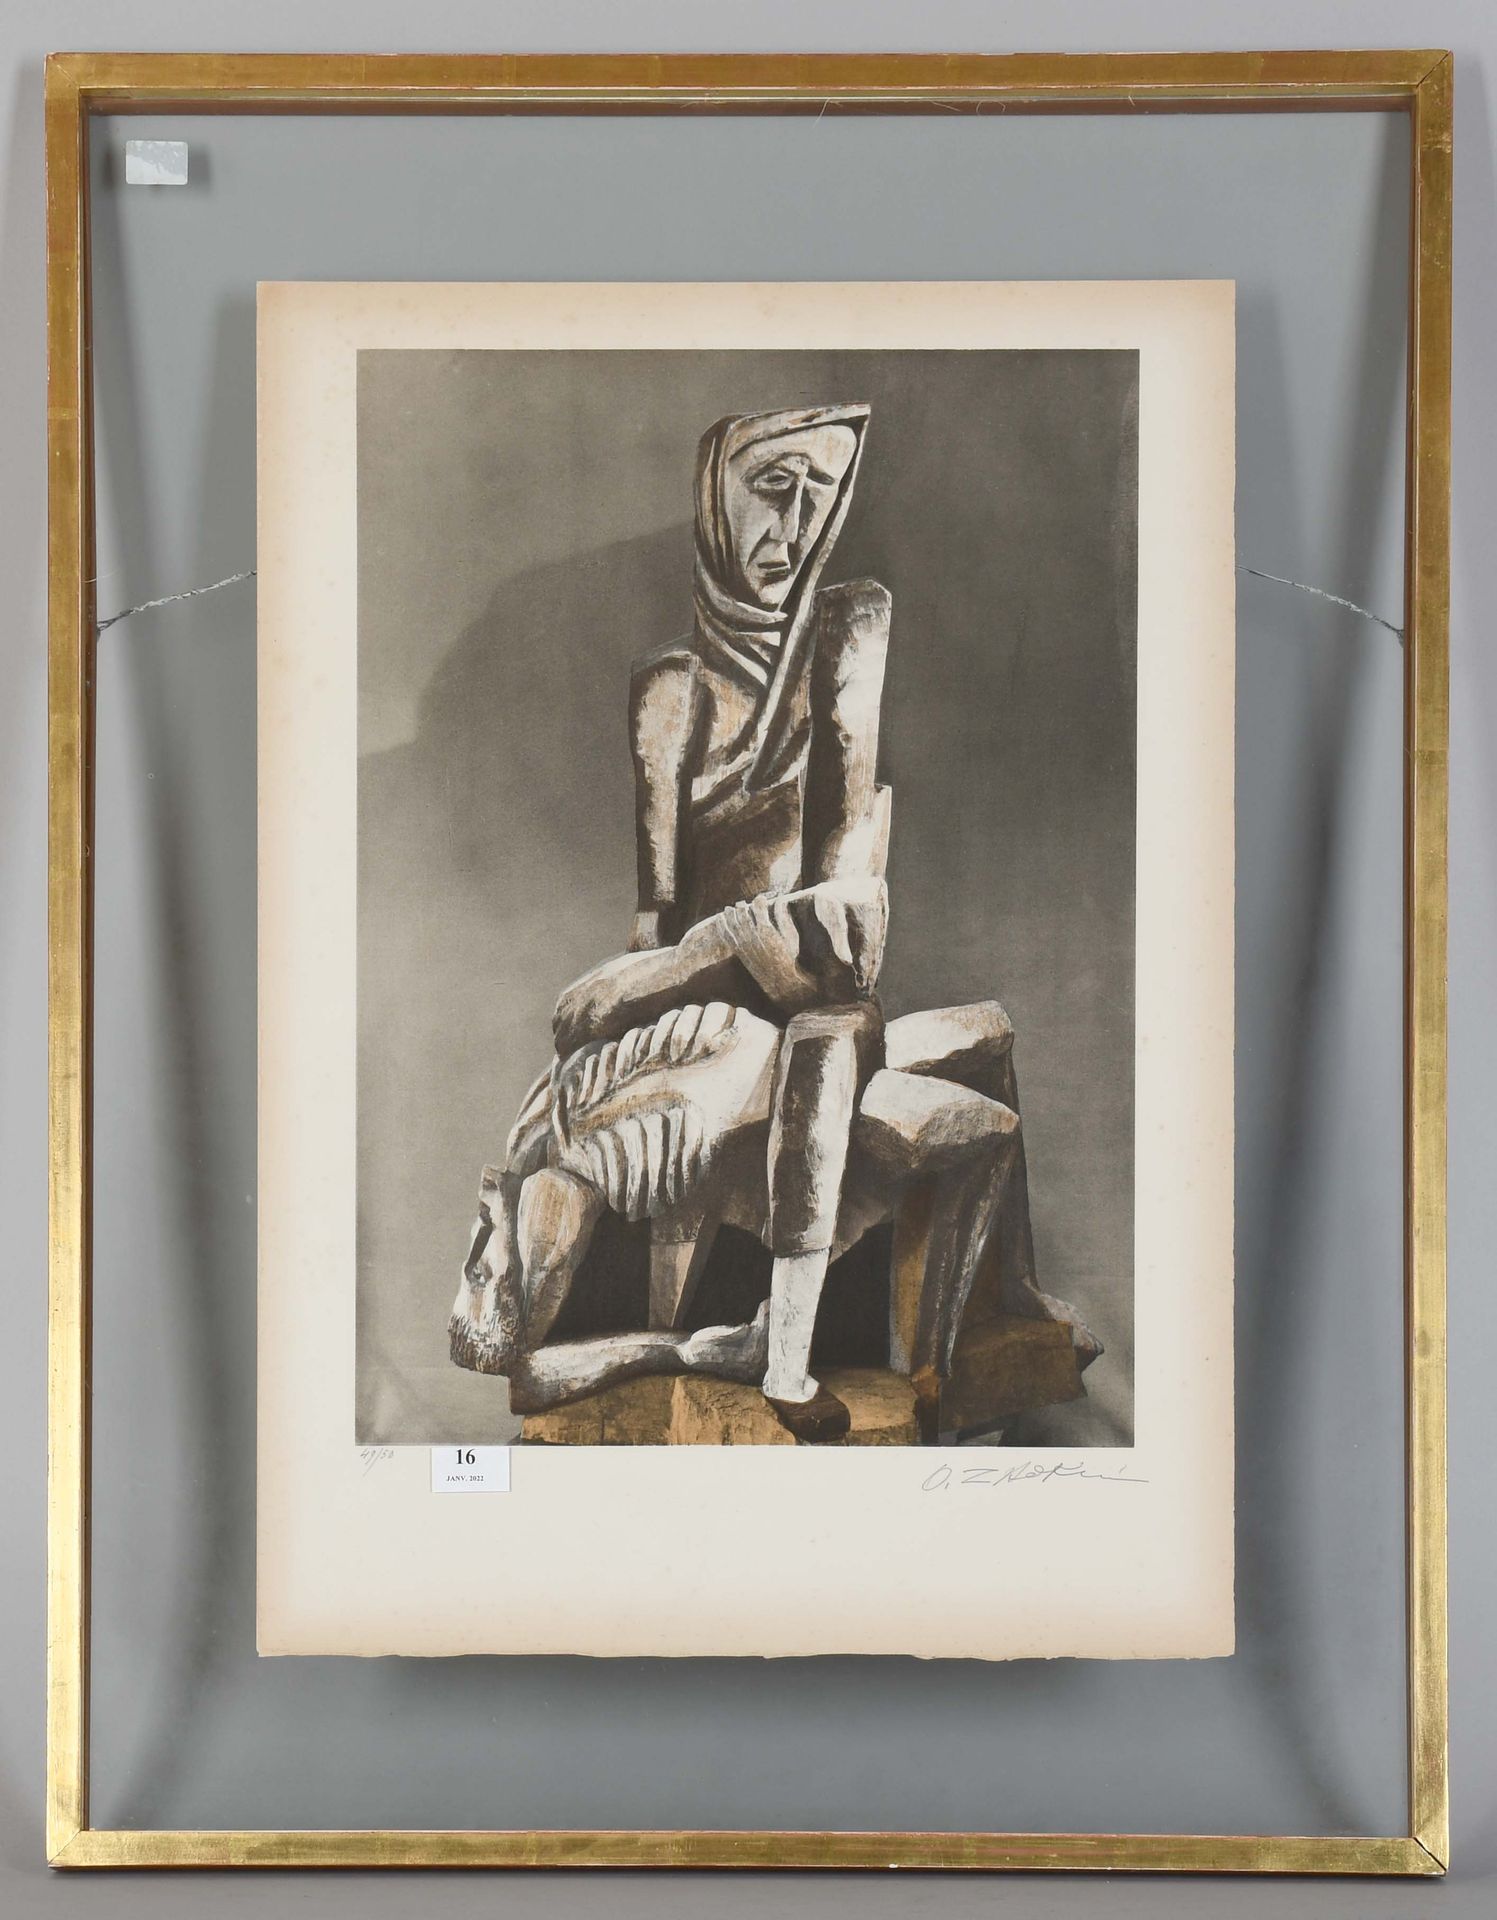 Null 奥西普-扎德基内

印刷品："Pietà"。编号为50份。签名。

尺寸：52厘米×38厘米。